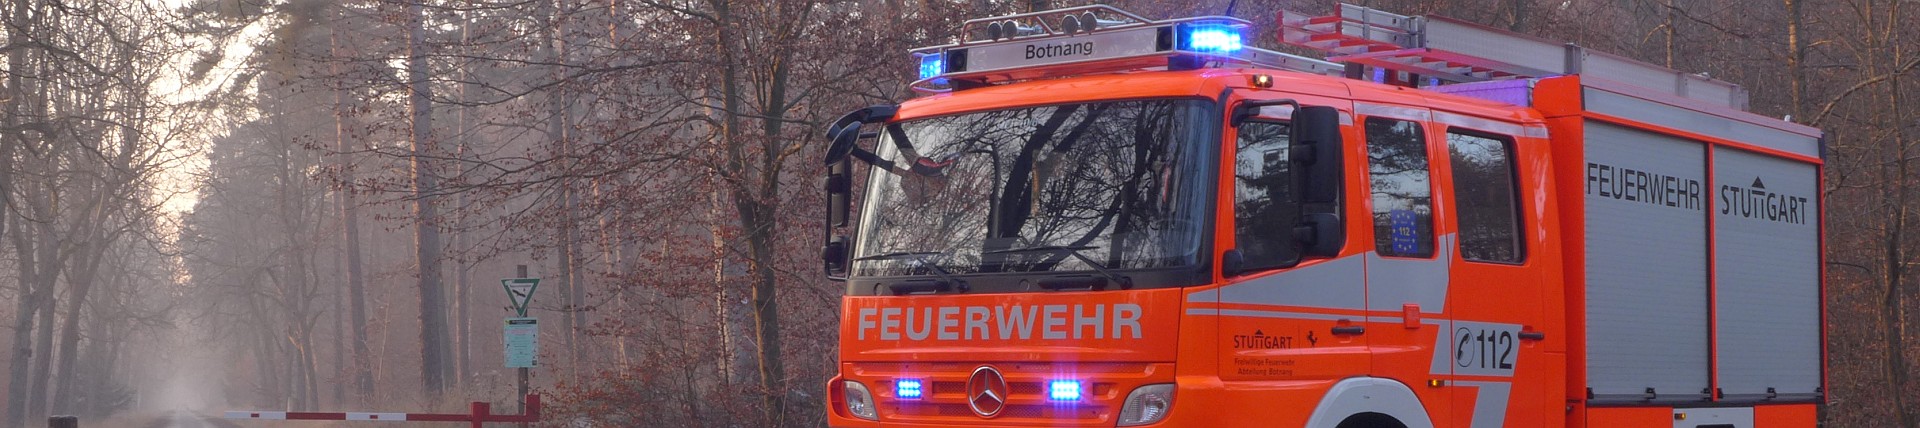 Feuerwehr Stuttgart - Freiwillige Feuerwehr Abteilung Botnang